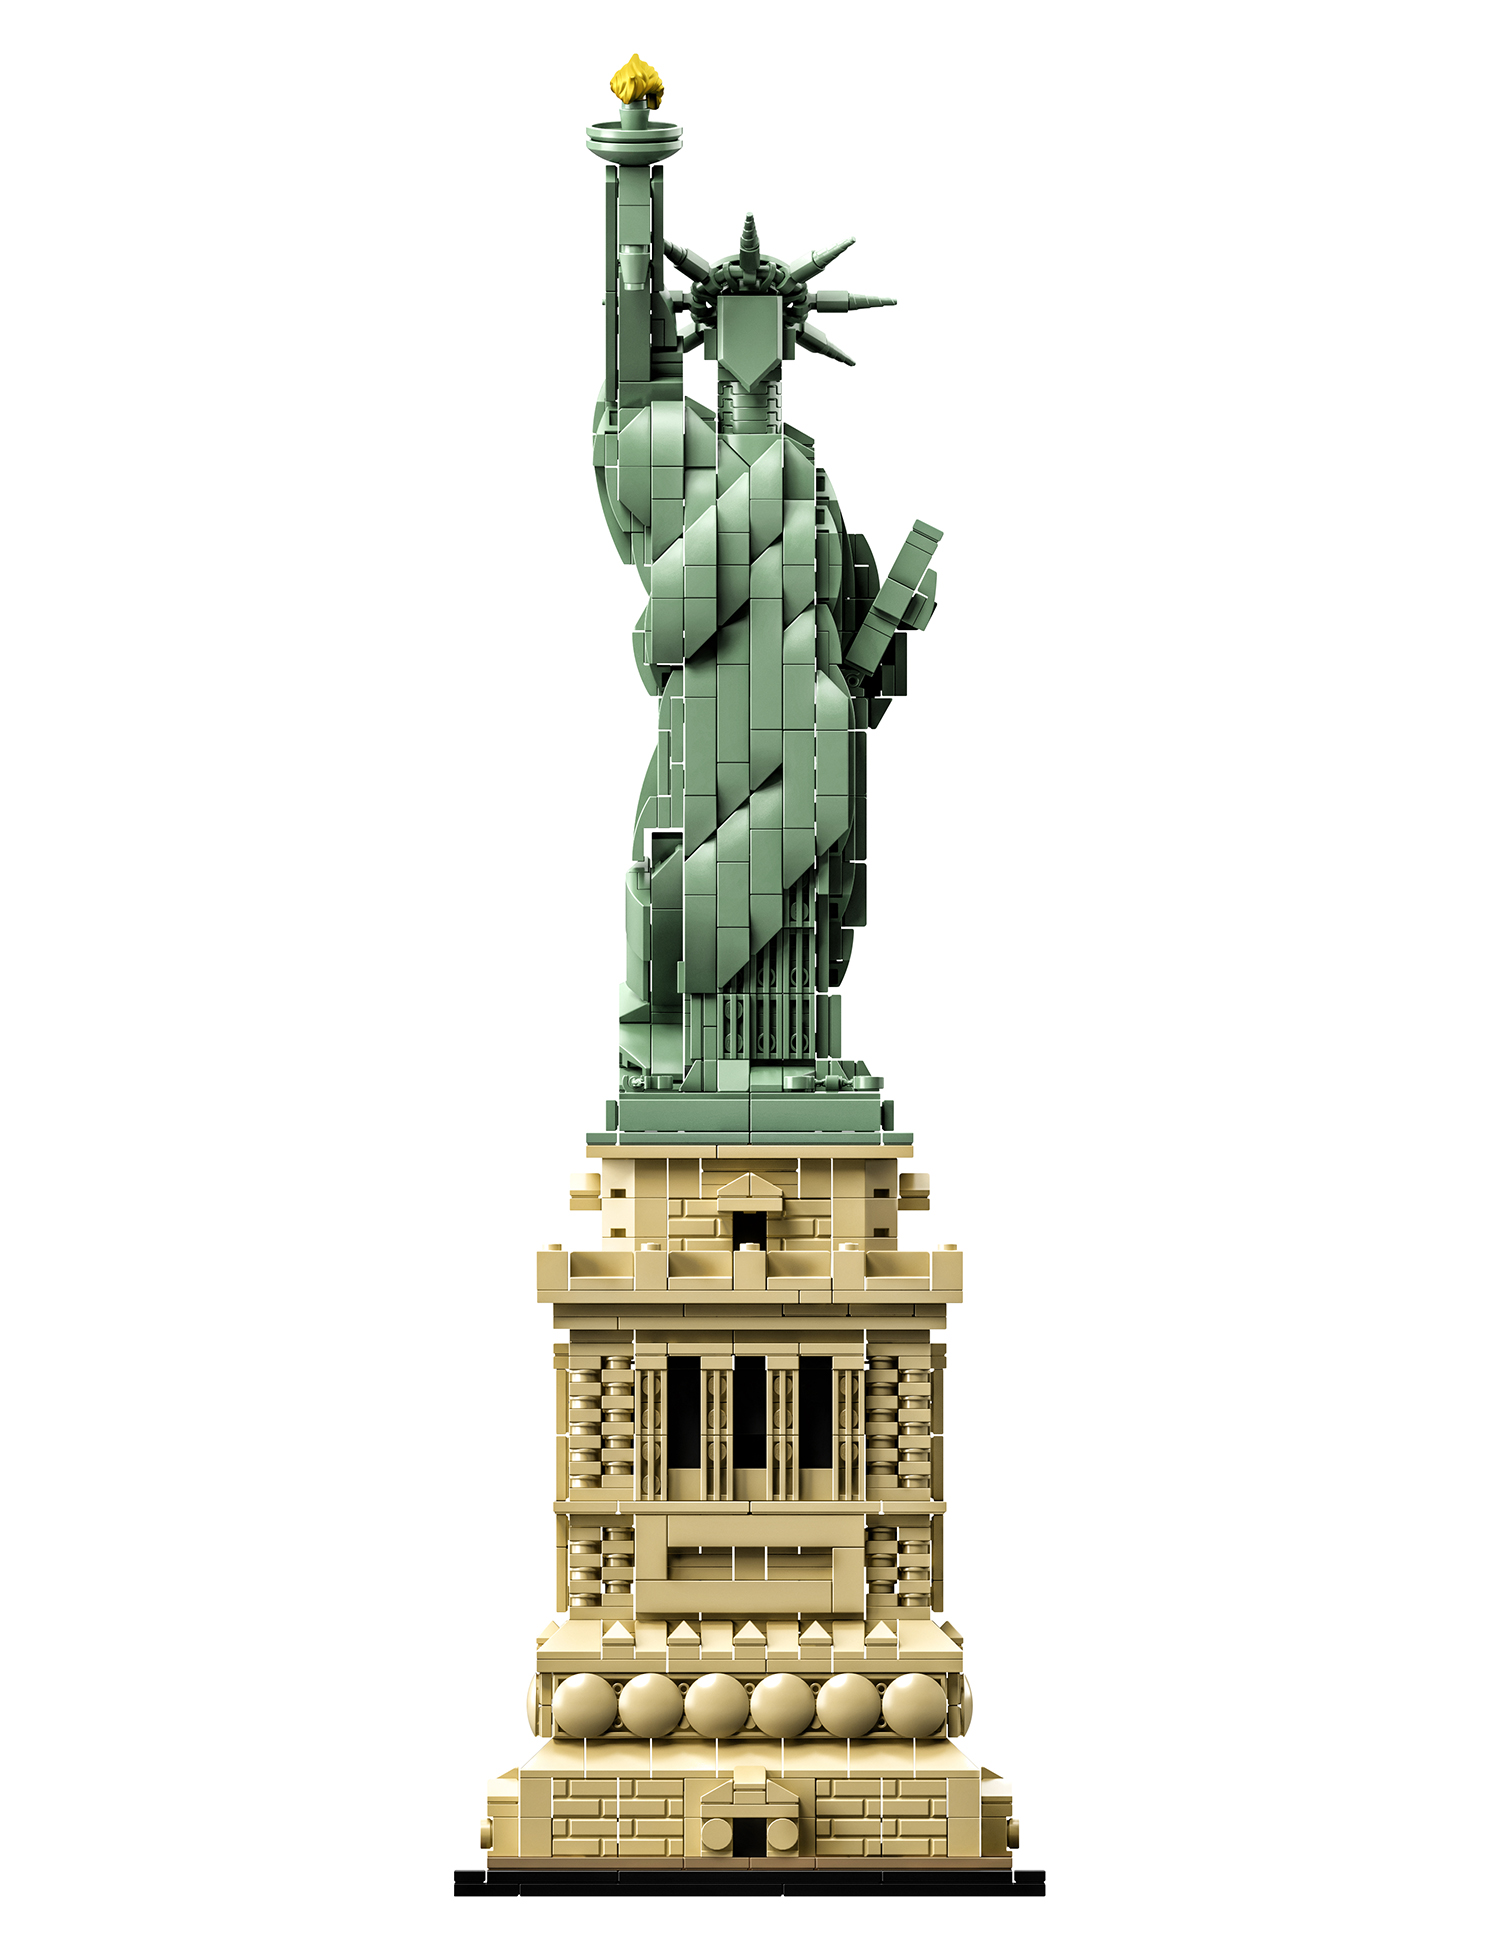 21042 - statua della libertà - lego architecture - toys center - LEGO ARCHITECTURE, Lego